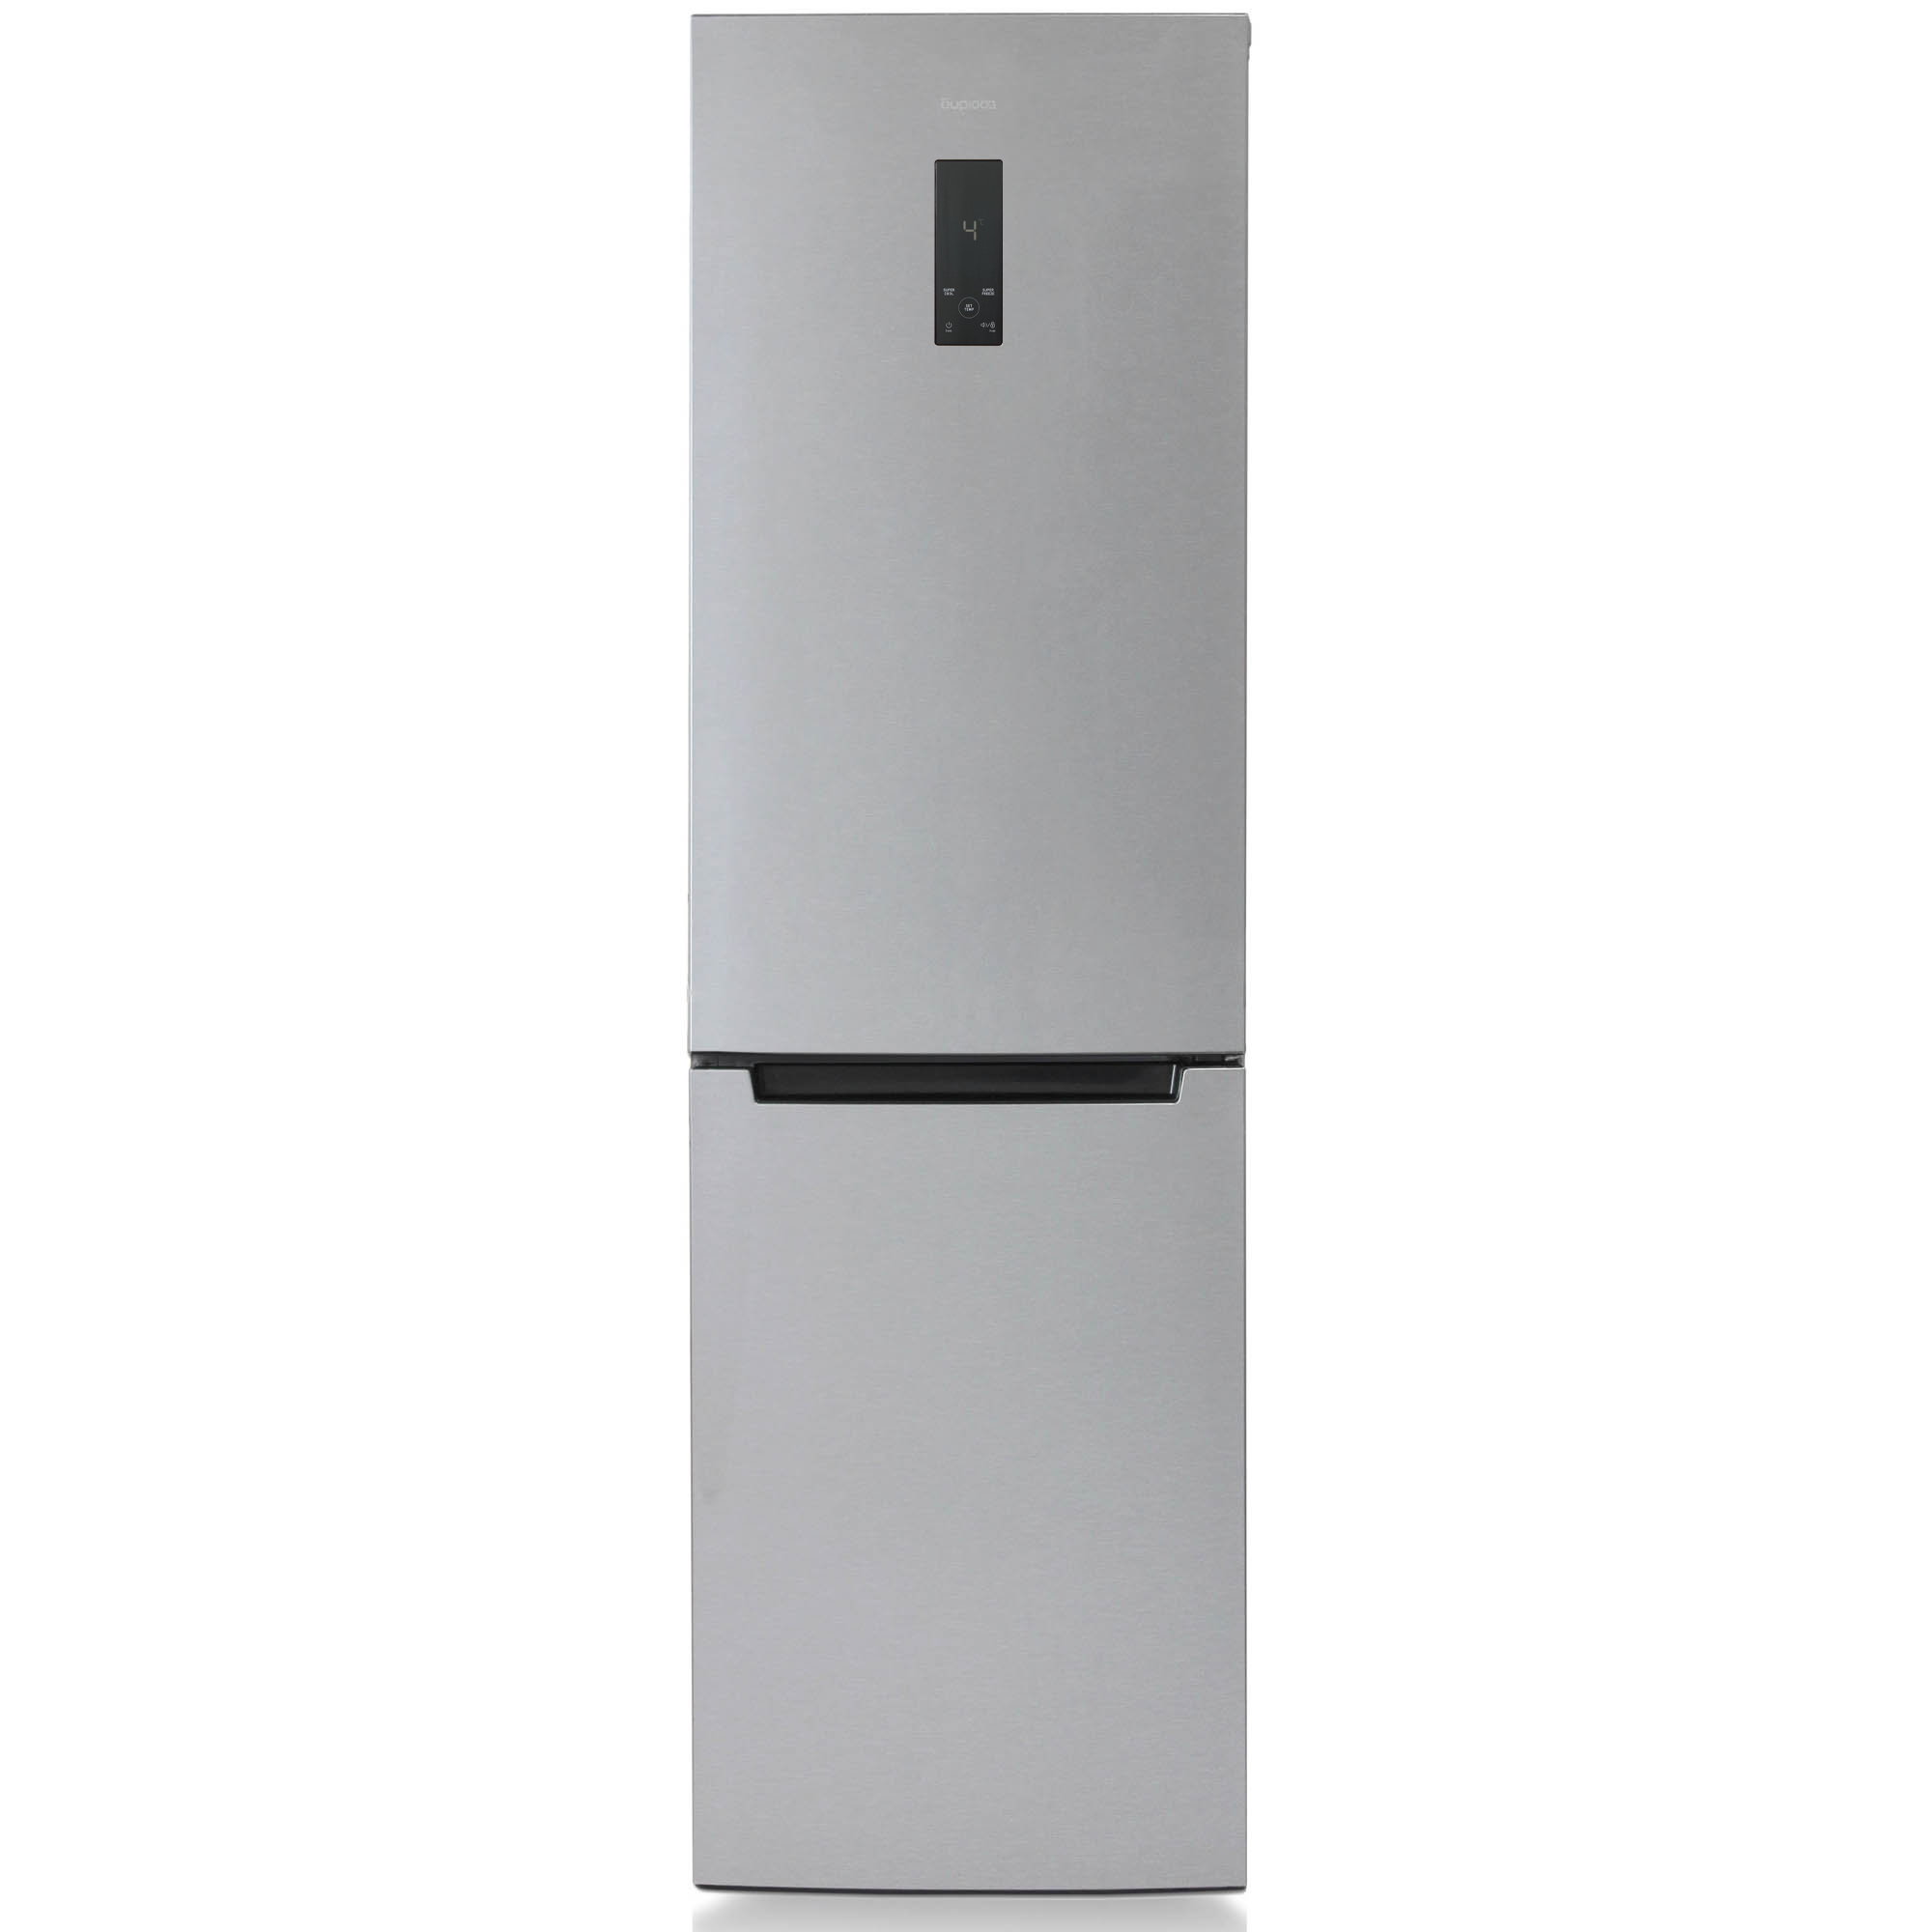 Холодильник Бирюса C980NF серебристый холодильник бирюса fd 431 i двухкамерный класс а 562 л серый